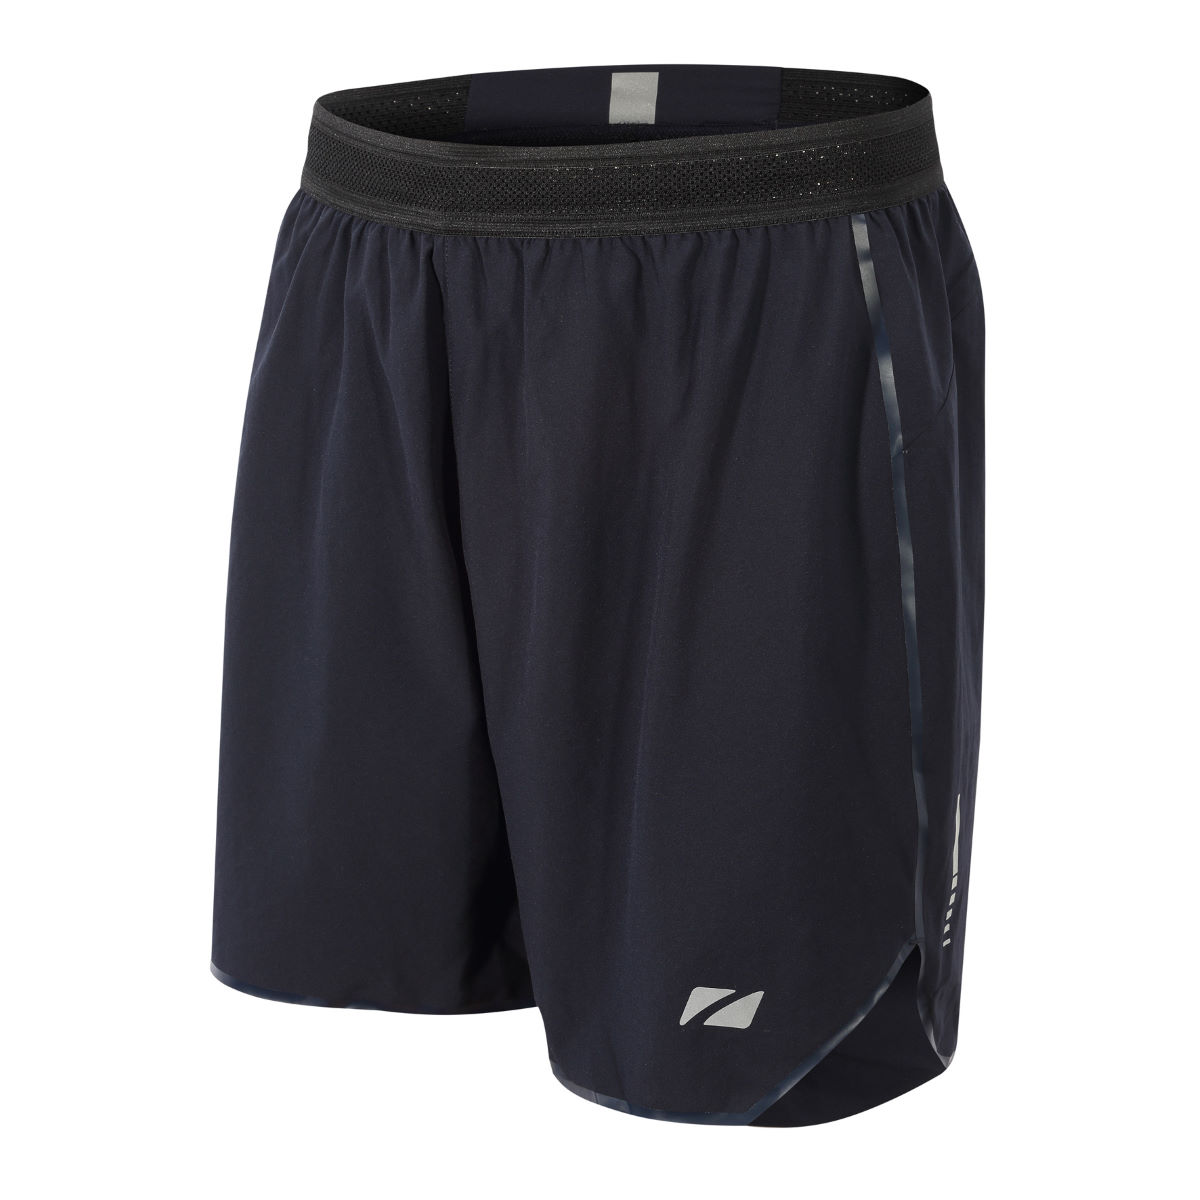 Pantalones cortos ligeros Zone3 Phantom Run (18 cm aprox.) - Pantalones cortos